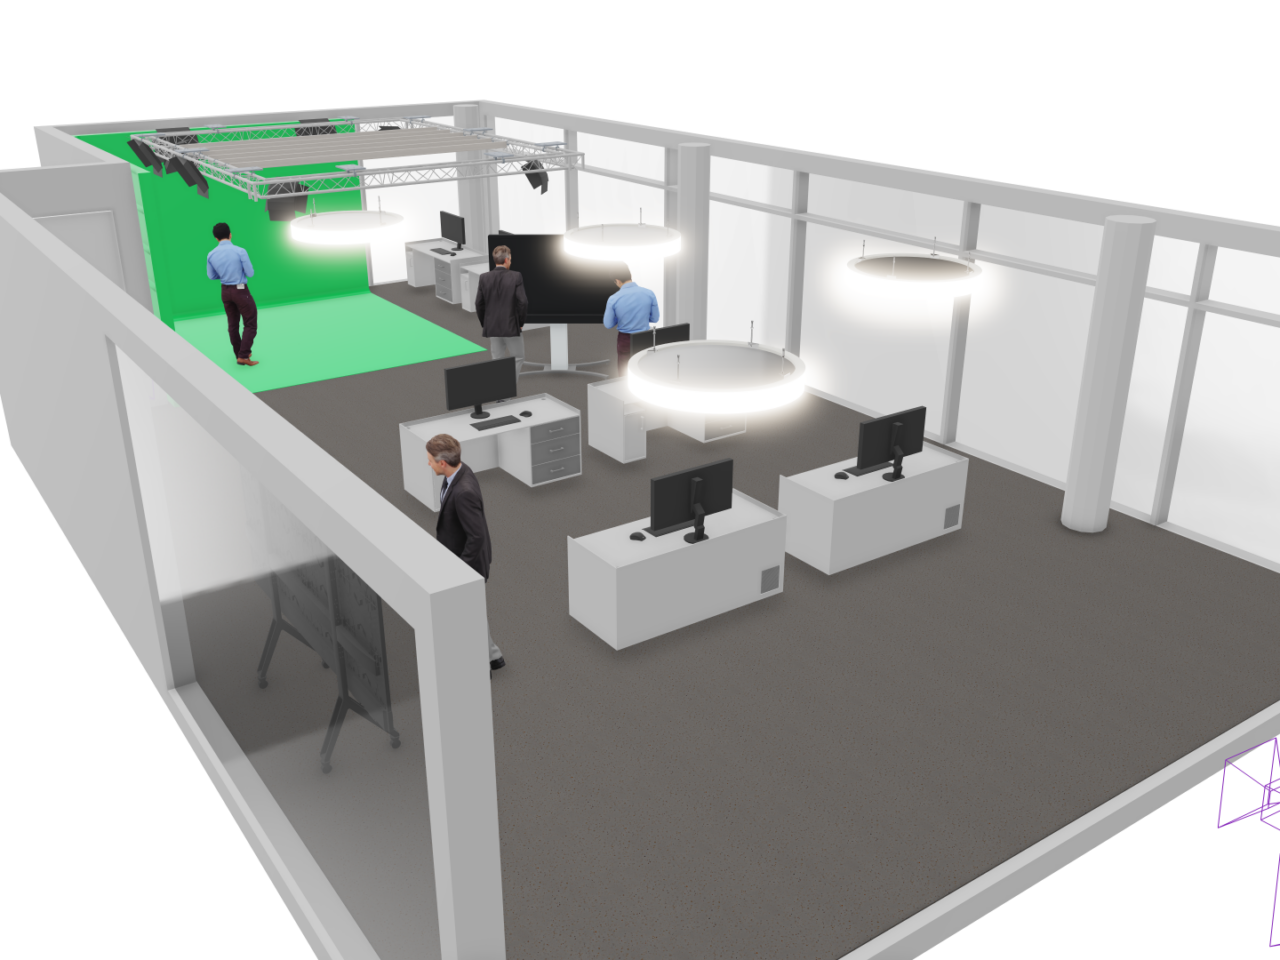 Ein schematisches Bild eines Open Offices zeigt eine dynamische Arbeitsumgebung, in der Mitarbeiter zusammenarbeiten. In einer Ecke befindet sich eine grüne VR Cave, die das Arbeiten mit Virtual Reality illustriert. Die Szene vermittelt den Eindruck von Kreativität und Innovation, während die VR Cave auf die Integration moderner Technologien in den Arbeitsprozess hinweist.